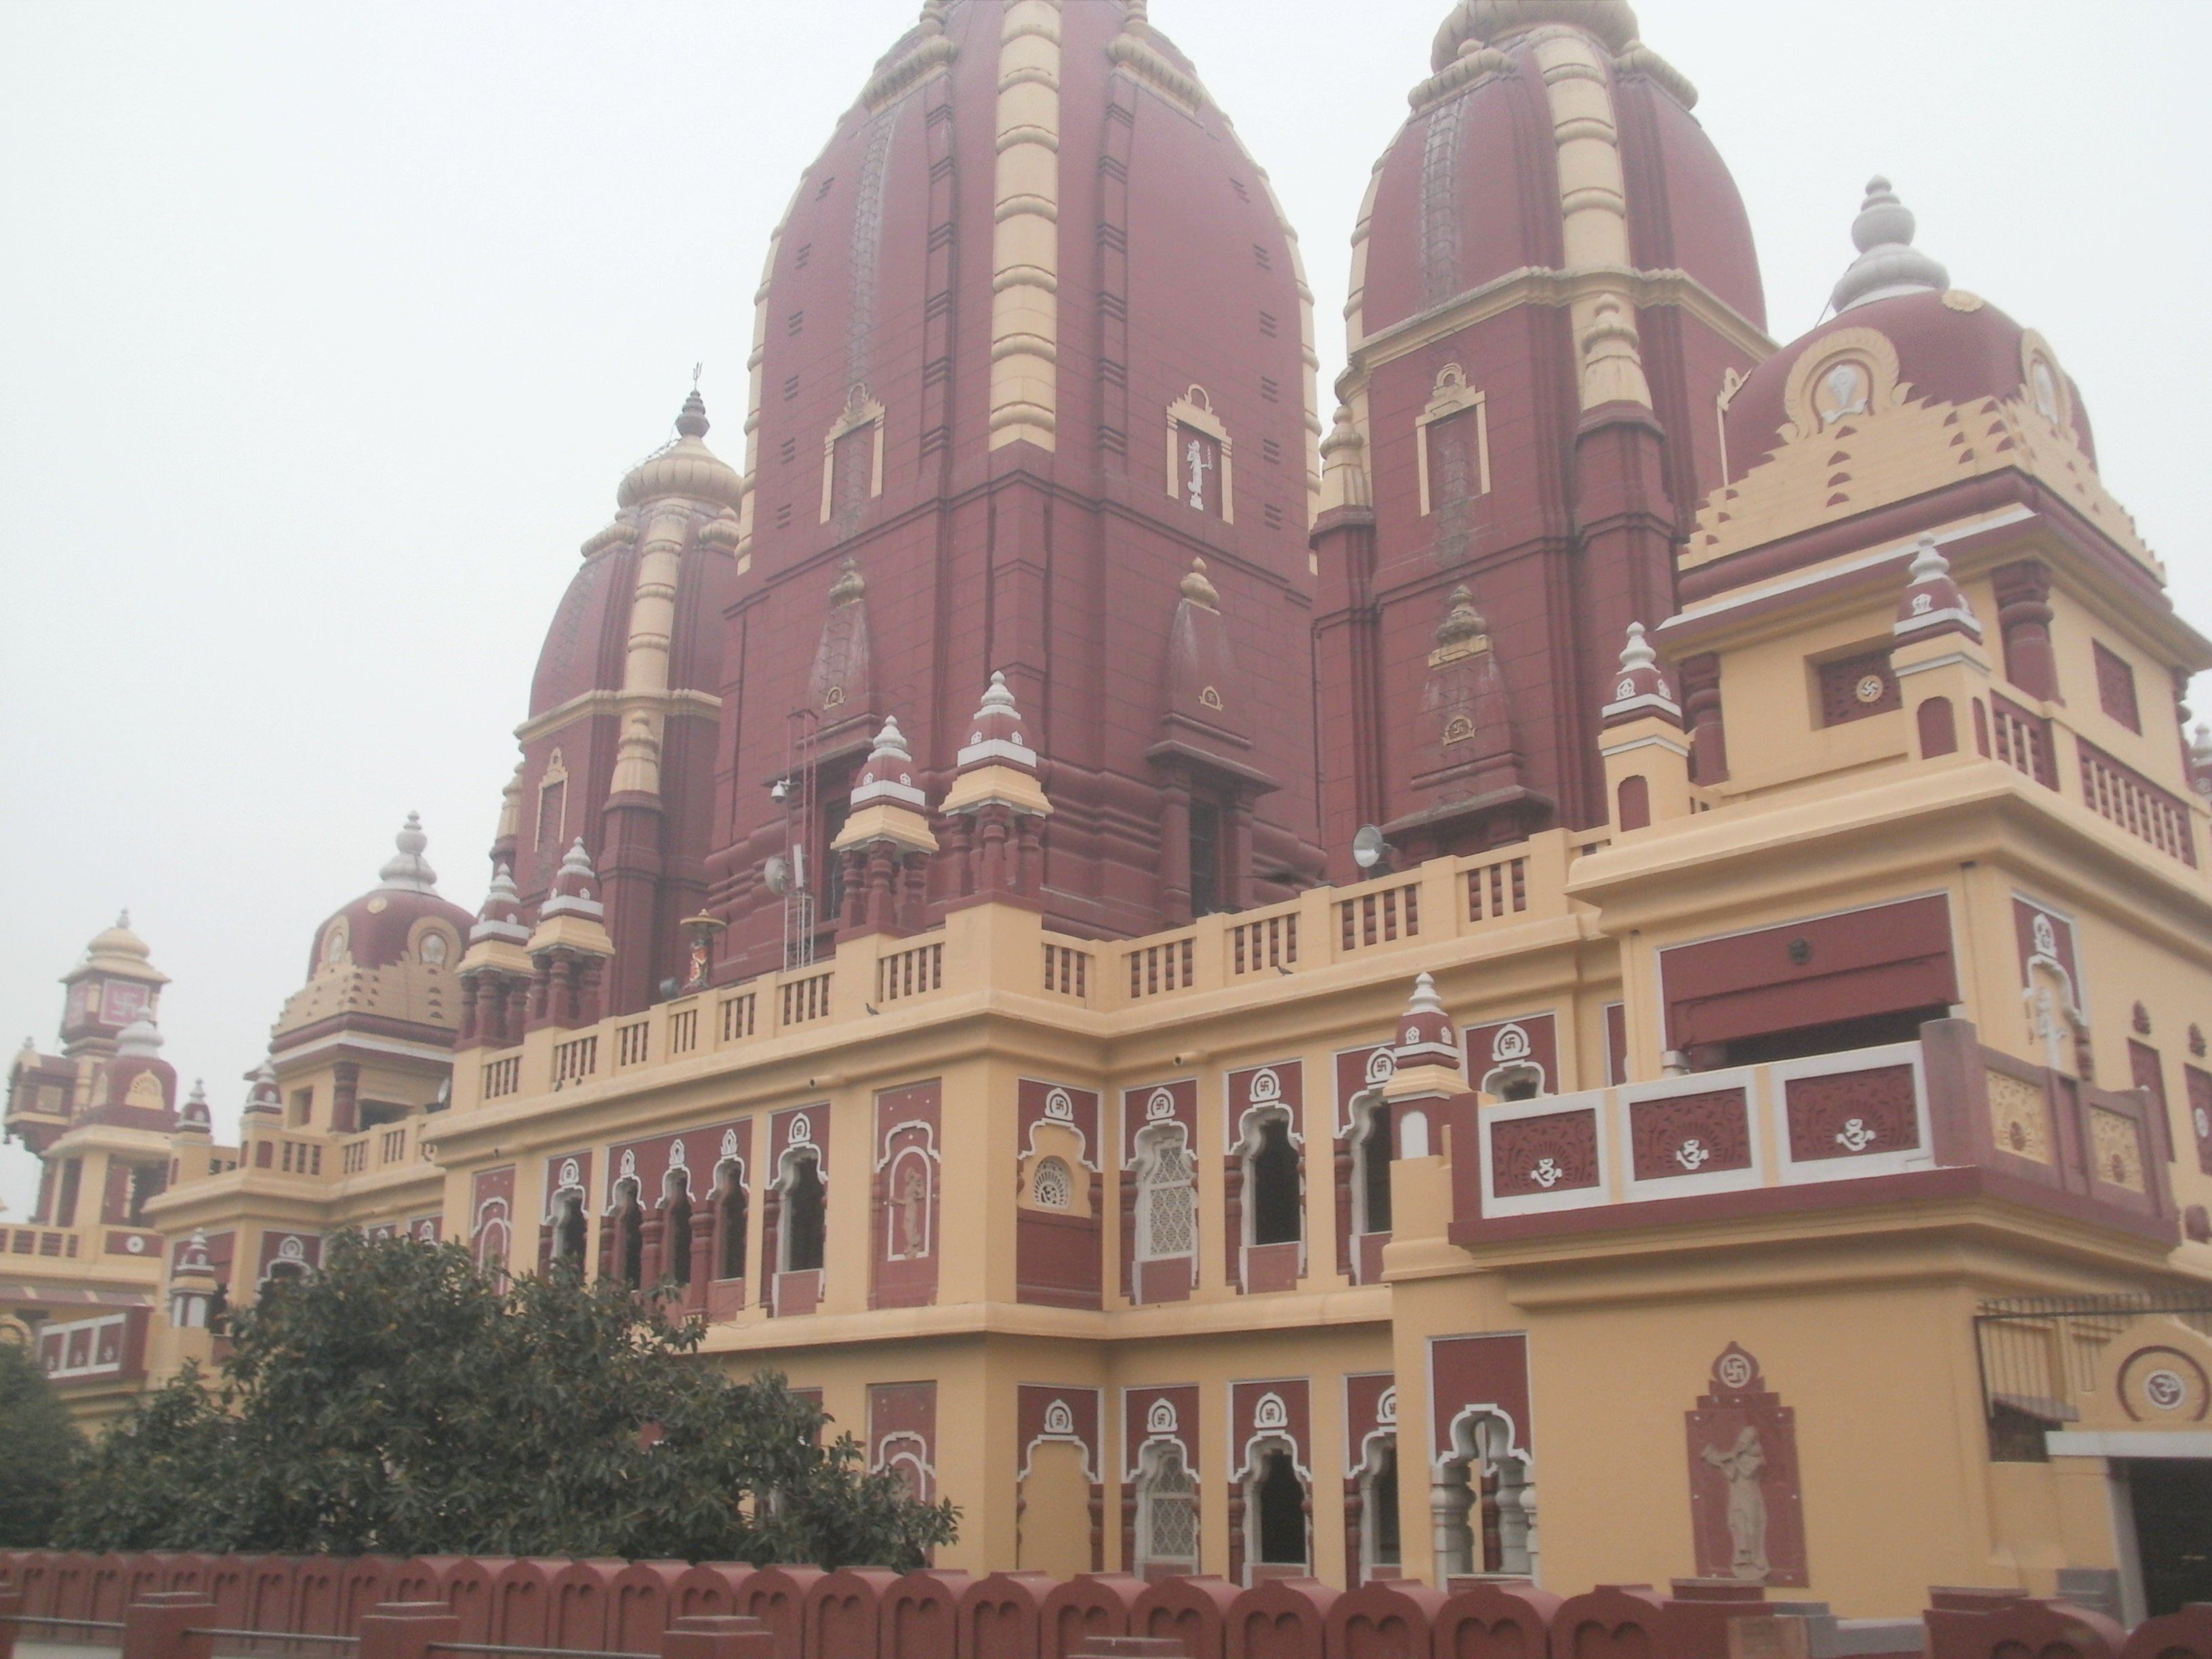 Laxmi Narayan Temple - New Delhi